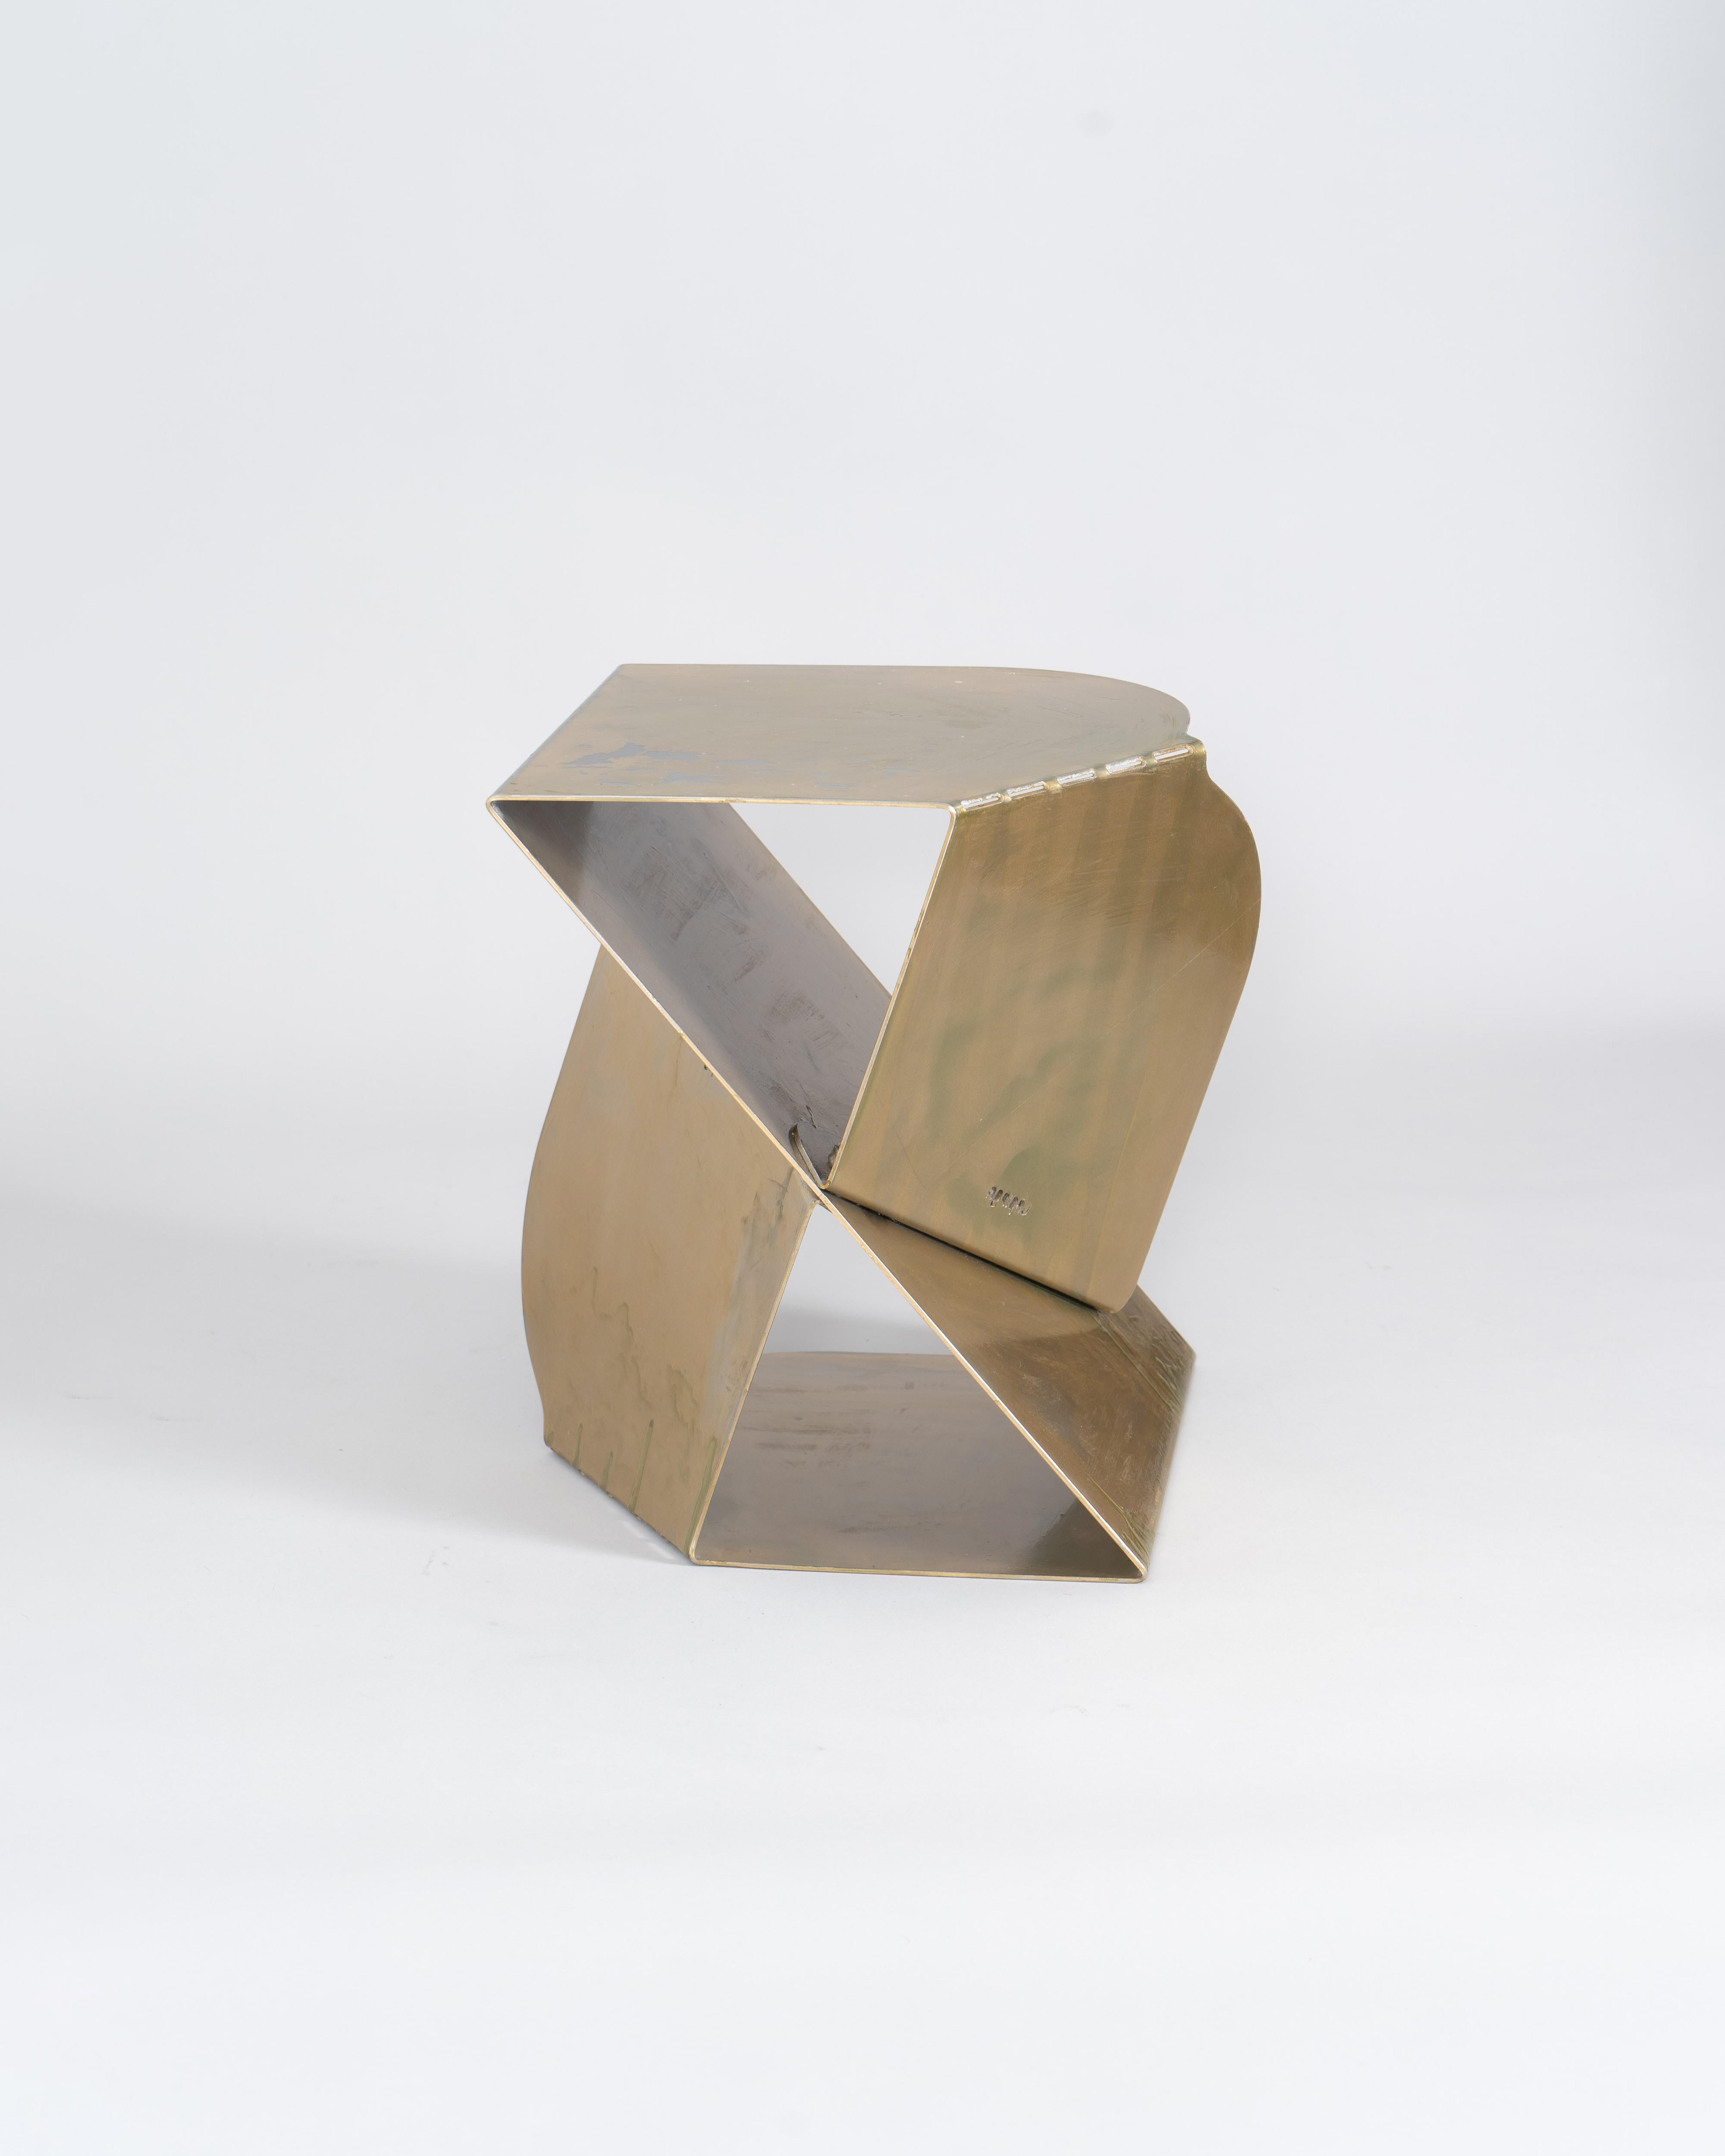 Der SovraP Tisch ist eine exquisite Verschmelzung von zeitgenössischem Design und italienischer Handwerkskunst. Das von Edizione Enrico Girotti mit Sorgfalt gefertigte Modell zeichnet sich durch seine einzigartige Struktur aus, die vollständig aus